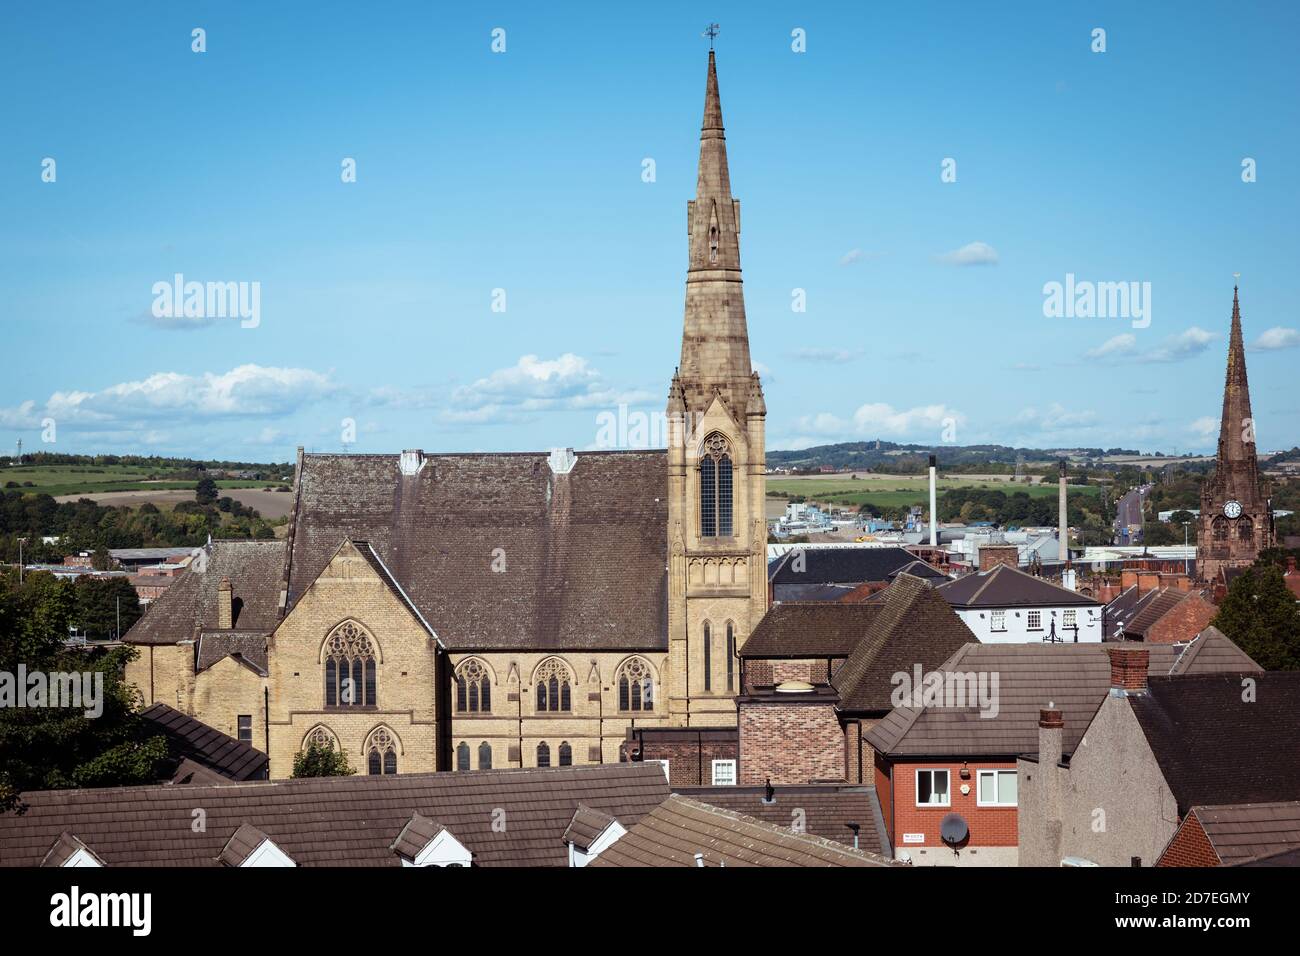 Une vue sur le paysage du centre de Rotherham, montrant les toits et l'église gothique méthodiste Banque D'Images